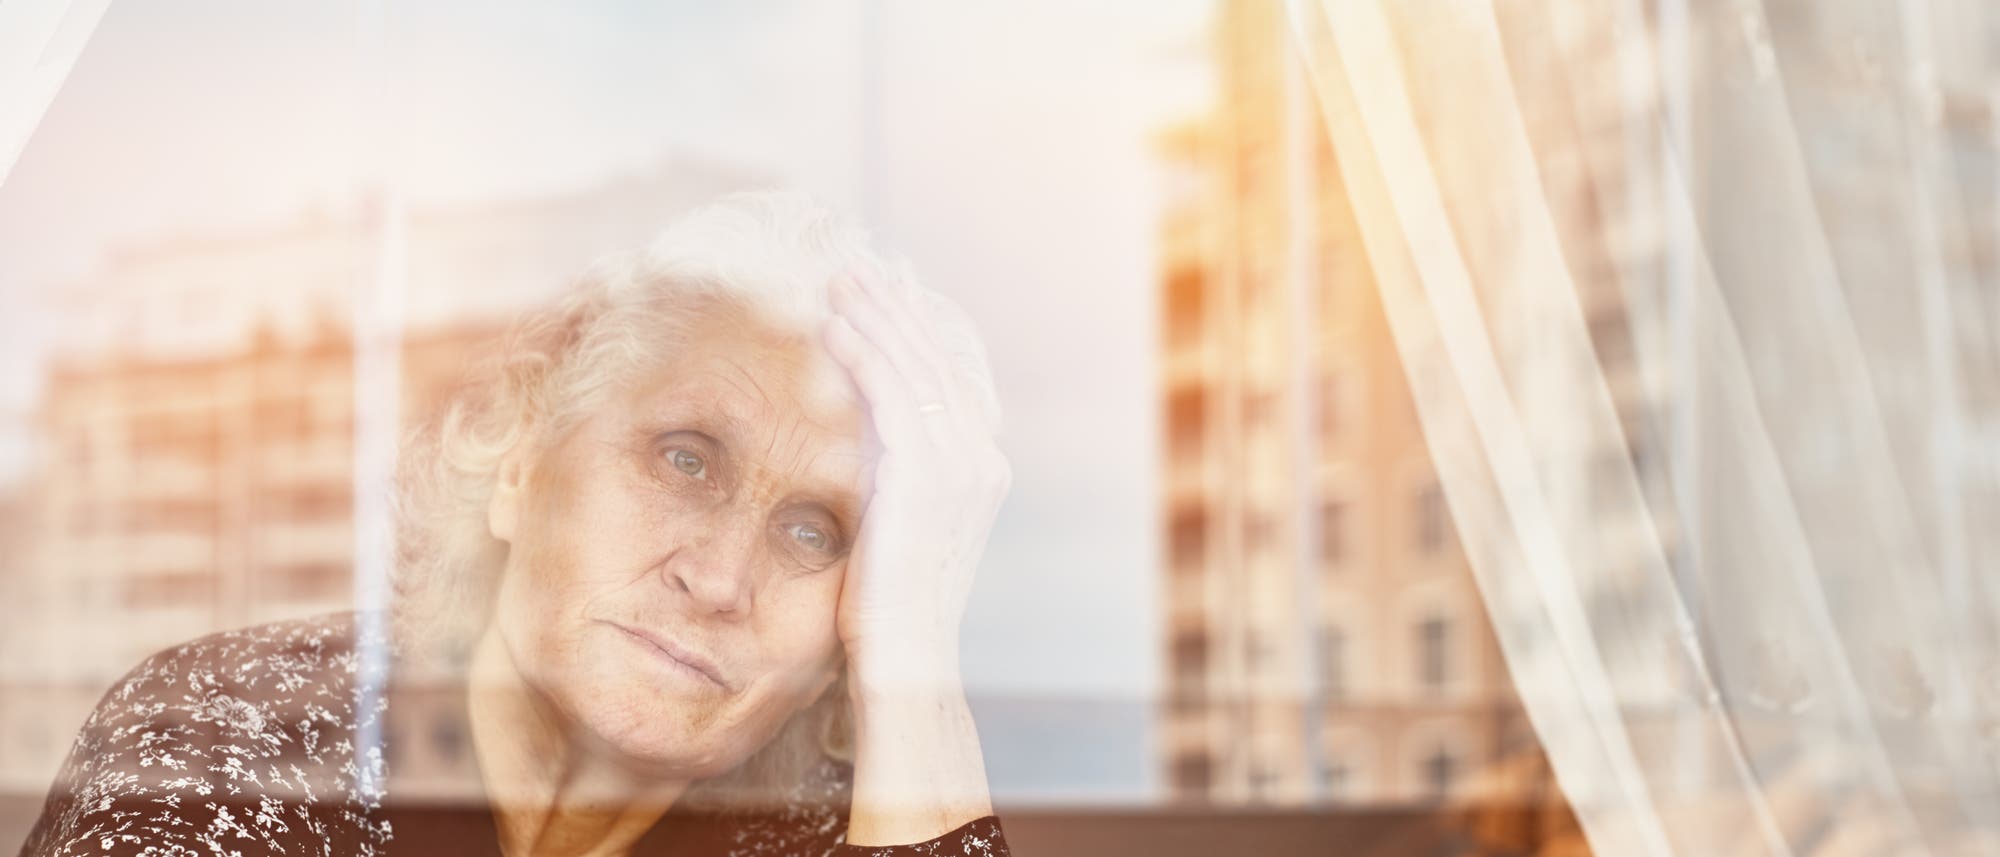 Eine ältere Frau schaut traurig aus ihrem Fenster. Die Farben sind blass.